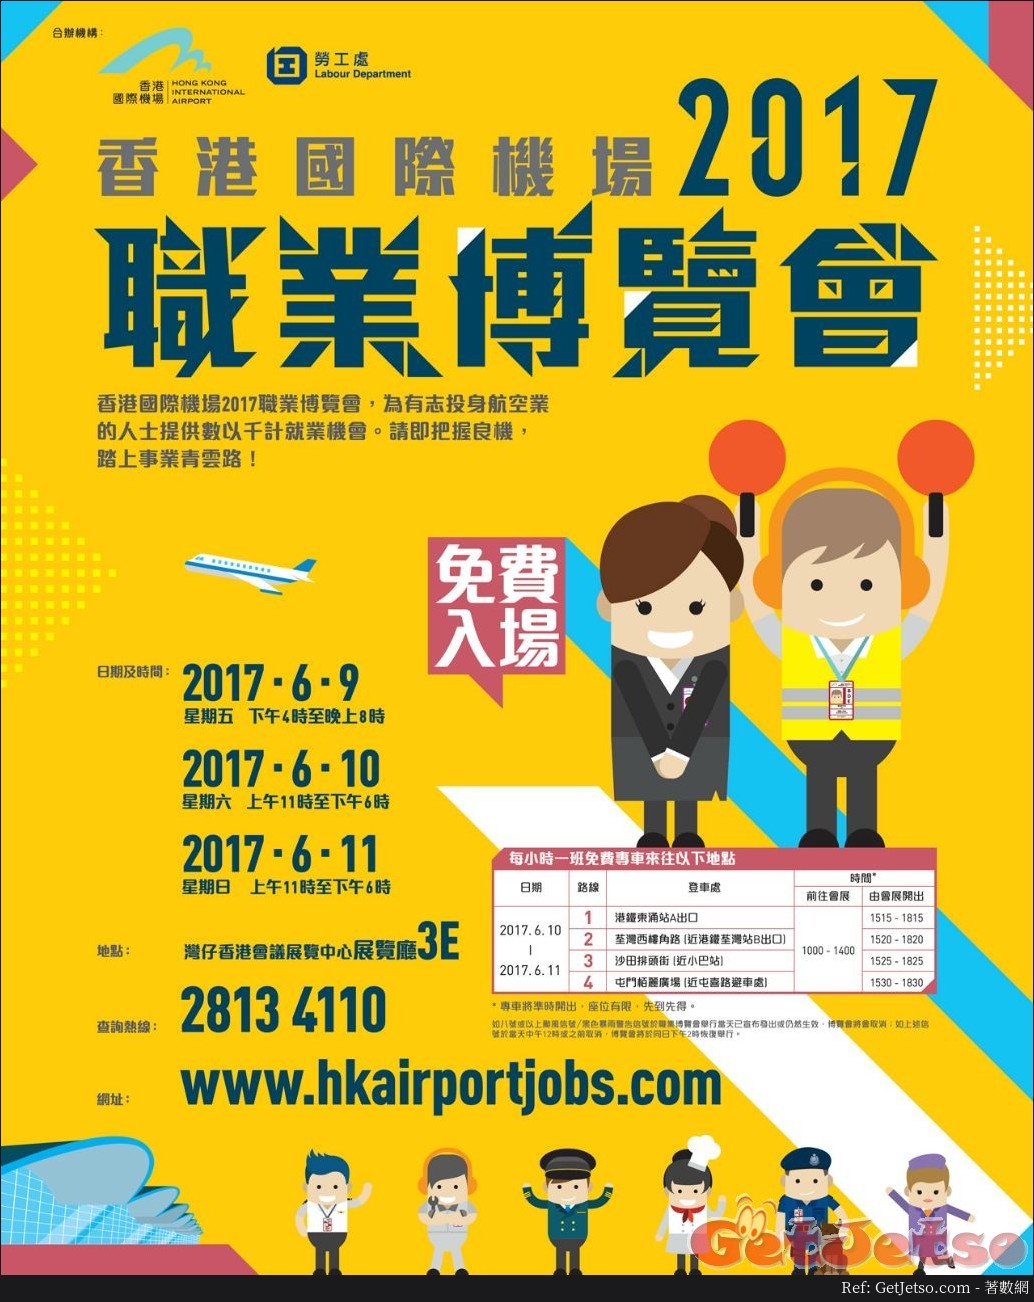 香港國際機場職業博覽會2017(17年6月9-11日)圖片1